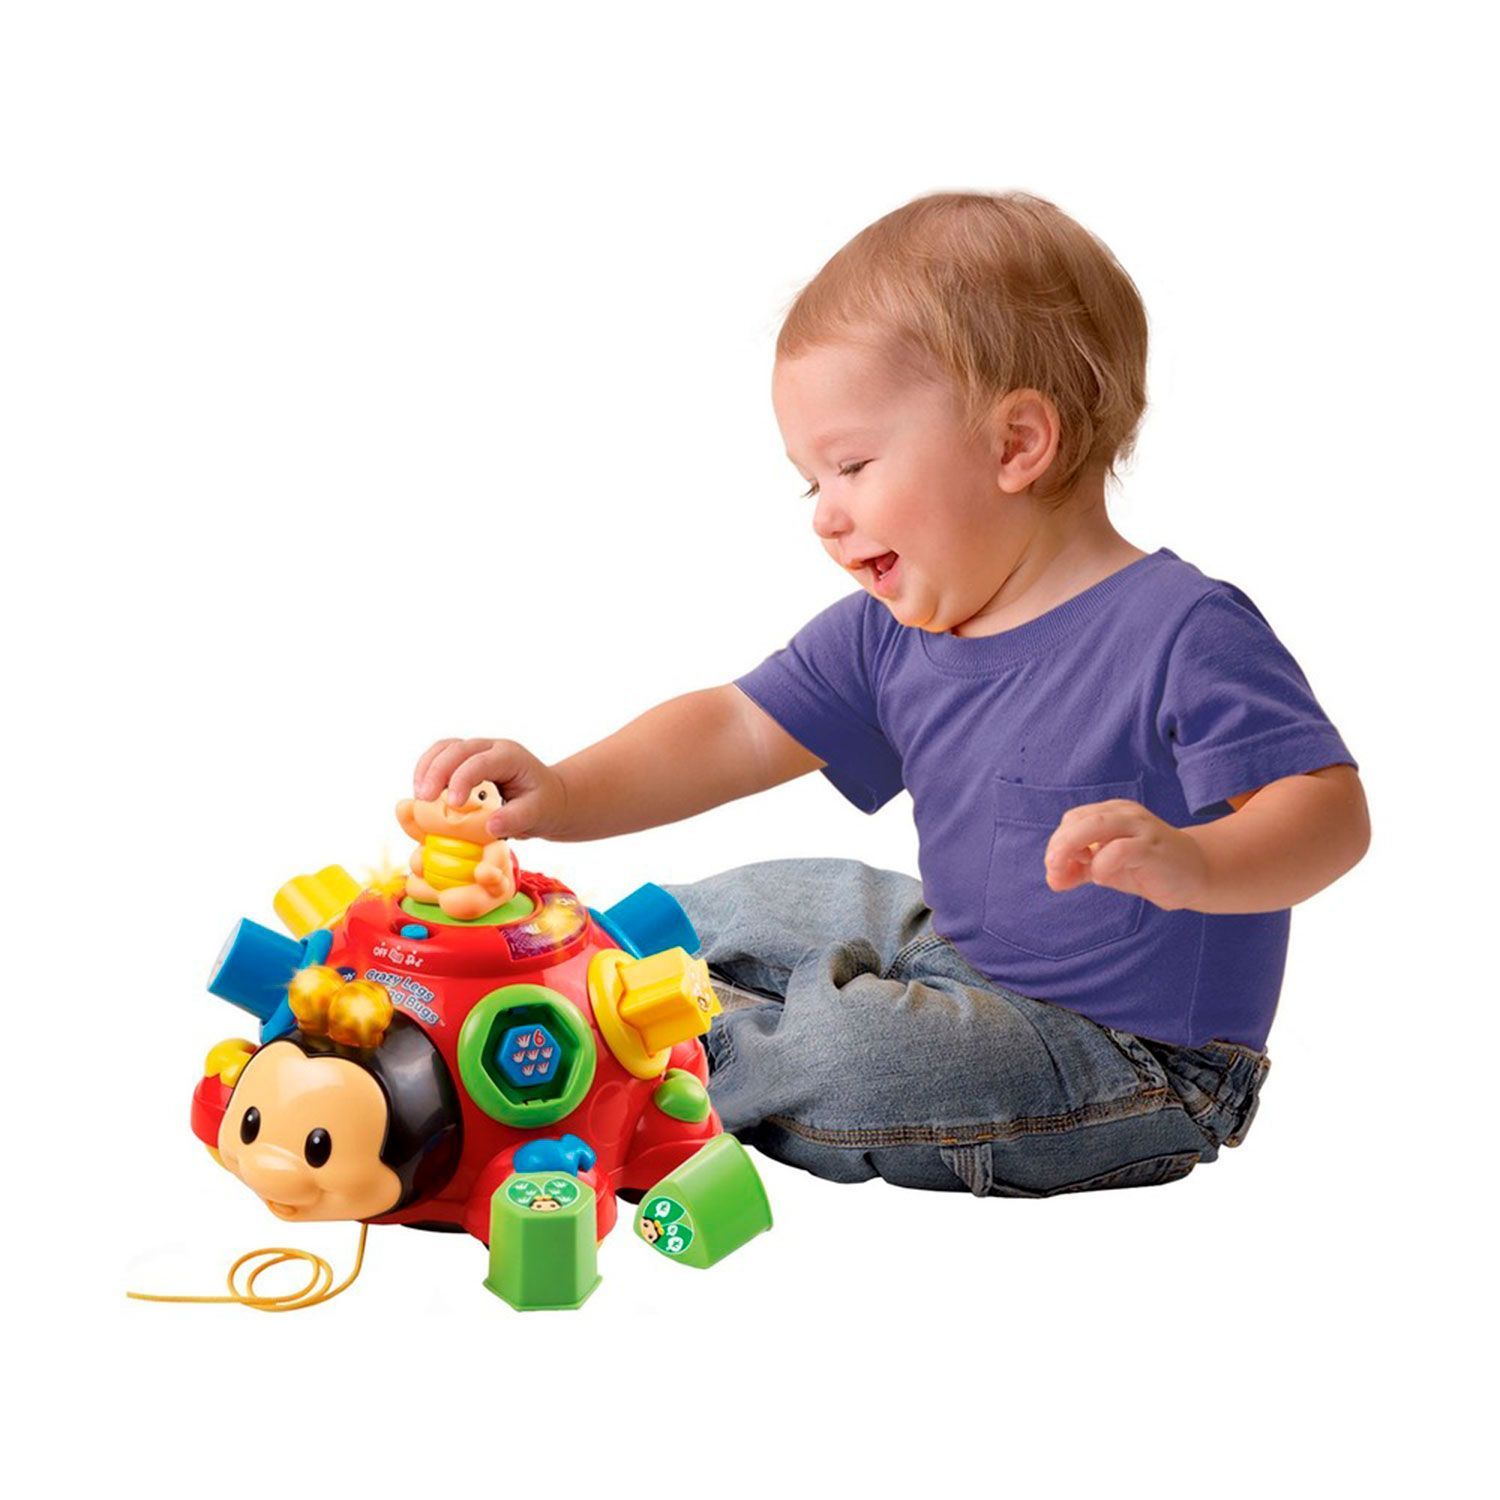 Что подарить на 6 месяцев. Vtech Baby игрушки. Vtech Божья коровка. Каталка-игрушка Vtech говорящий Жук (80-111226) со звуковыми эффектами. Игрушки для мальчиков 1 год.